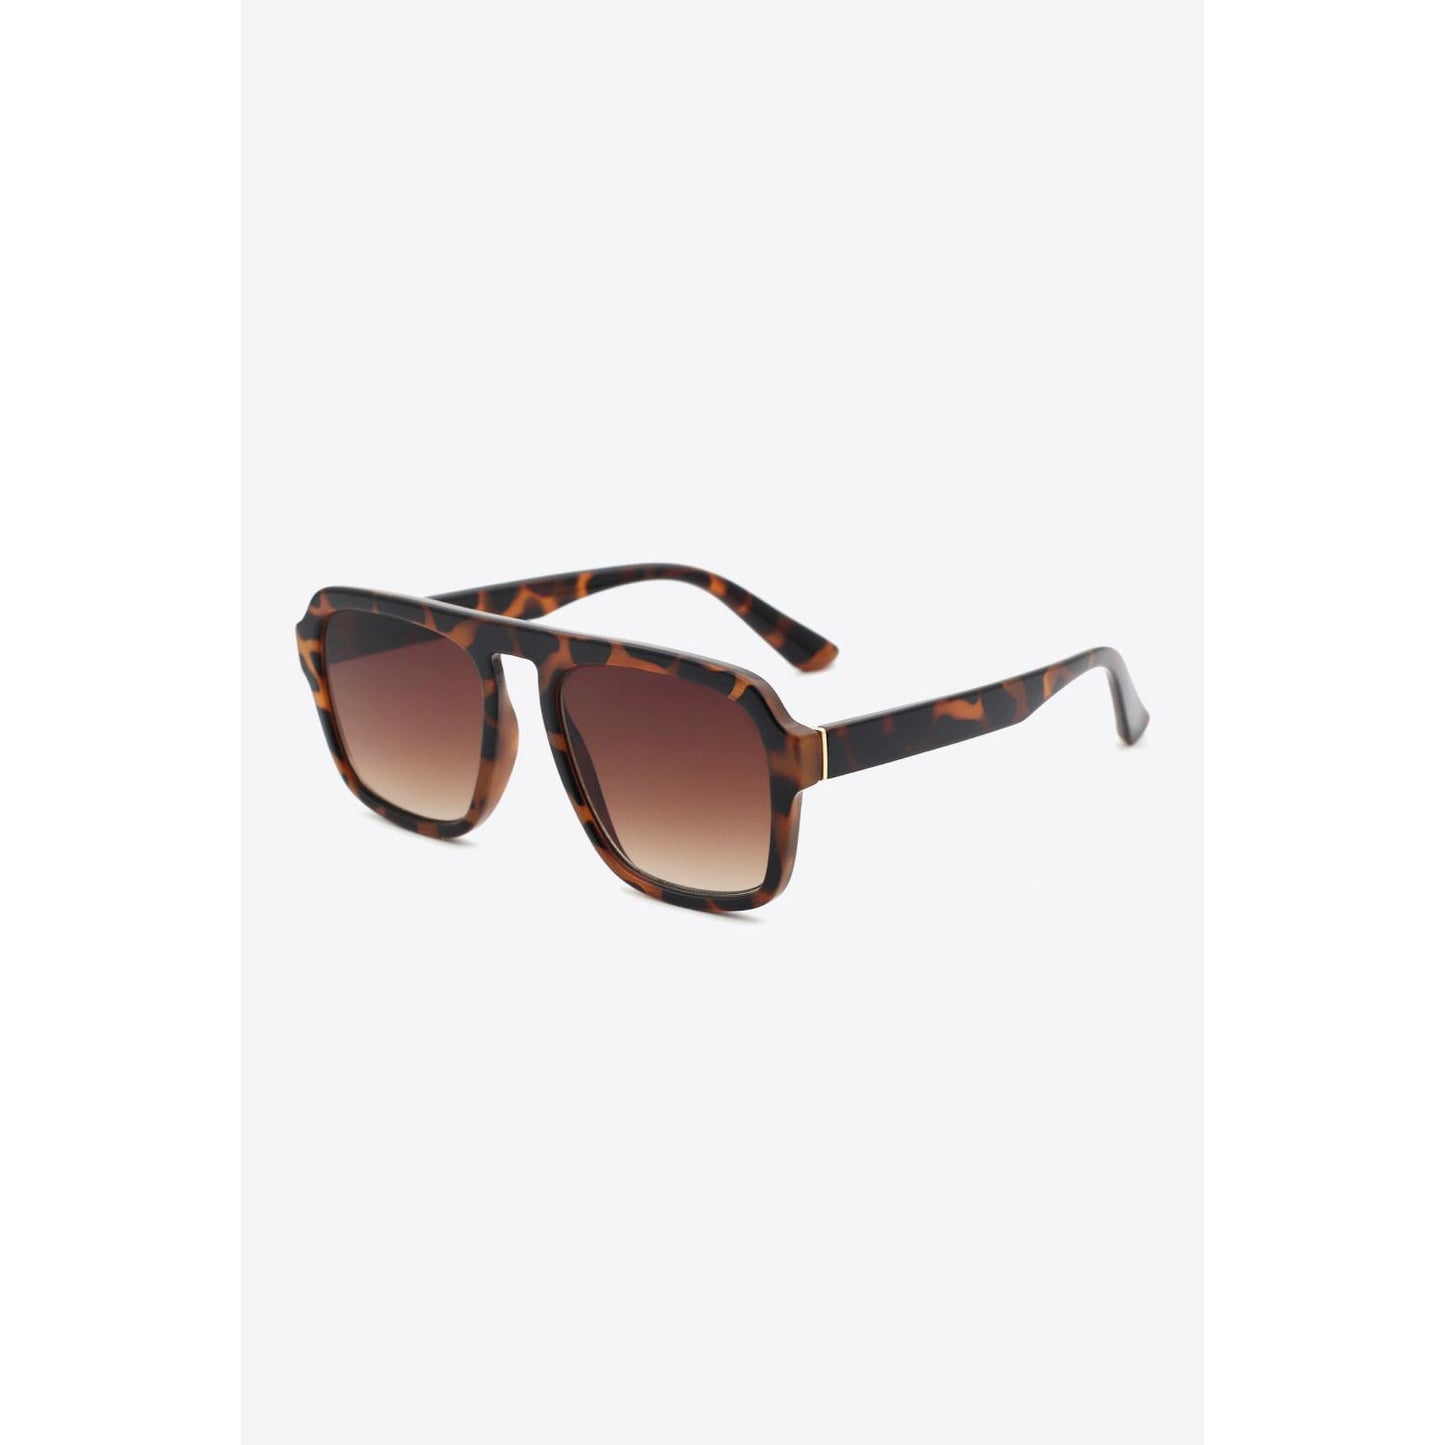 Tortoiseshell Square Polycarbonate Frame Sunglasses - TiffanyzKlozet